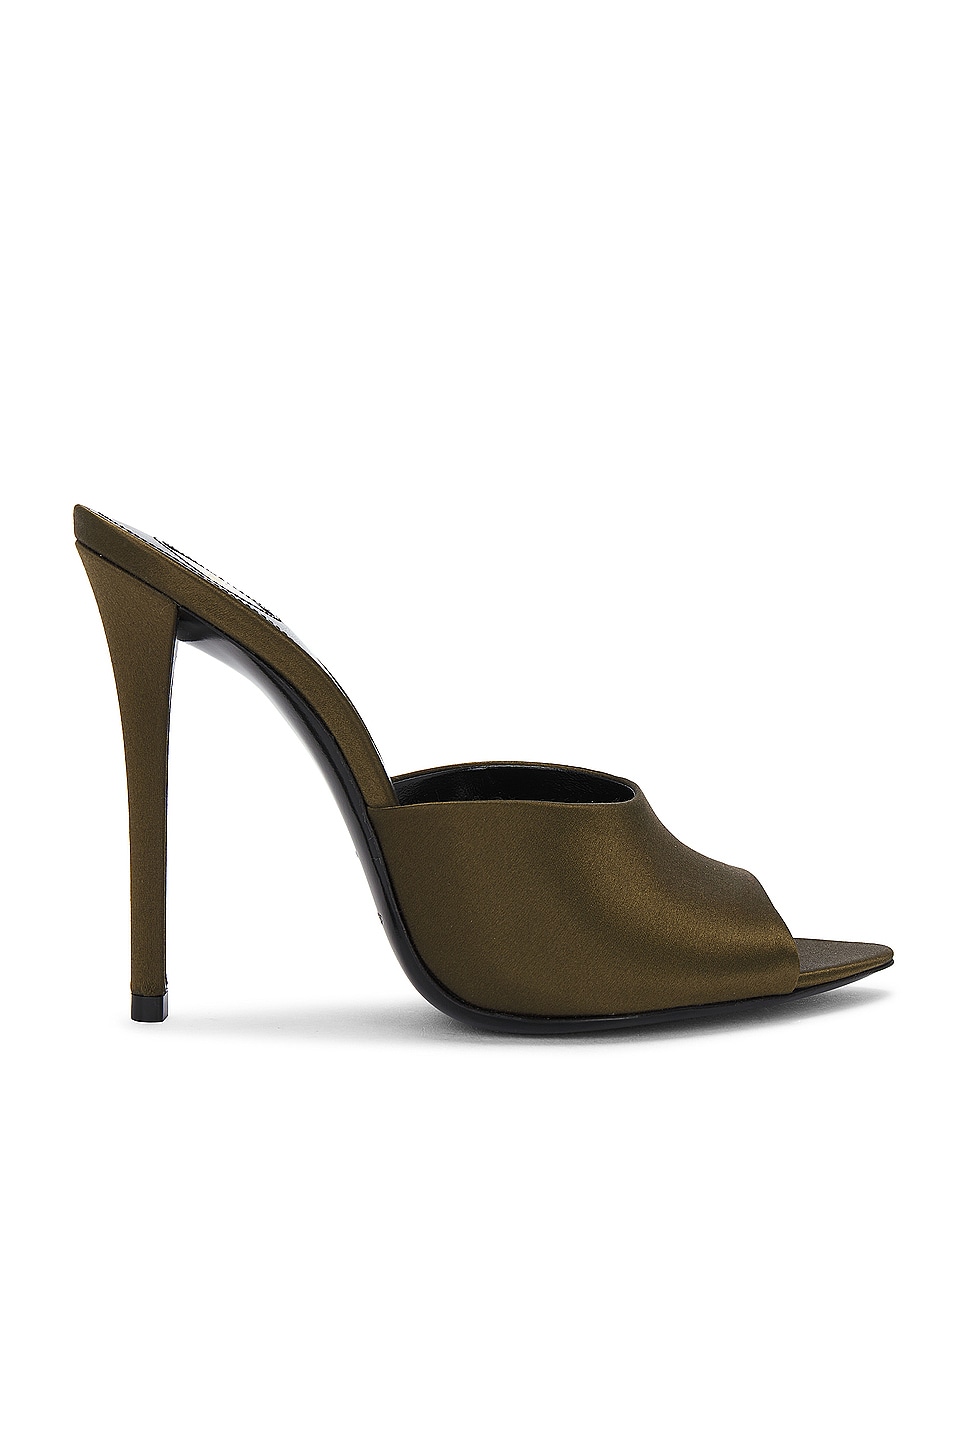 Image 1 of Saint Laurent Goldie Mule Sandal in Deep Kaki